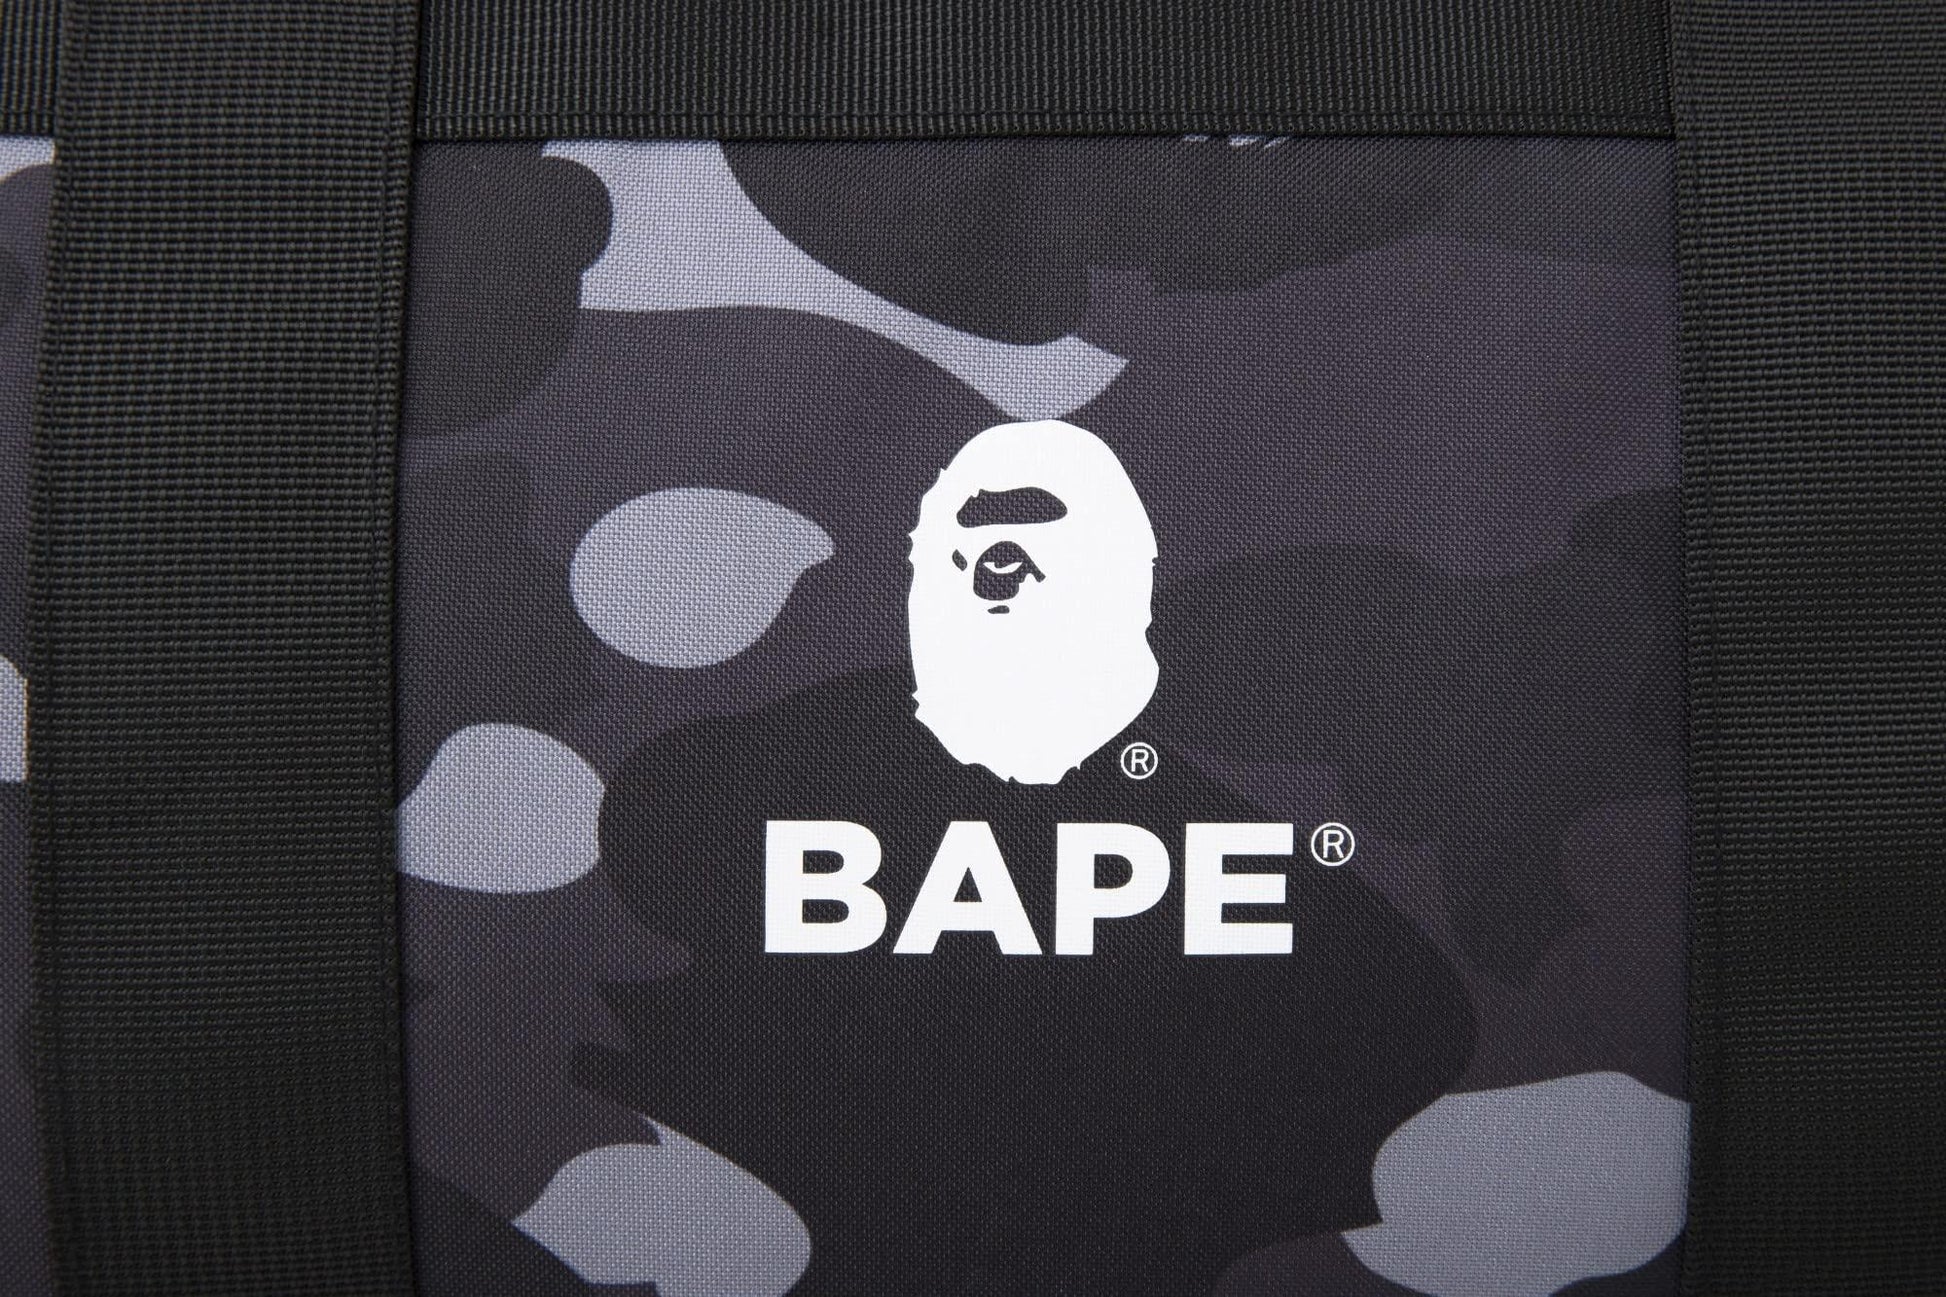 BAPE E-Mook A Bathing Ape 2022 S/S Collection bag set - HARUYAMA